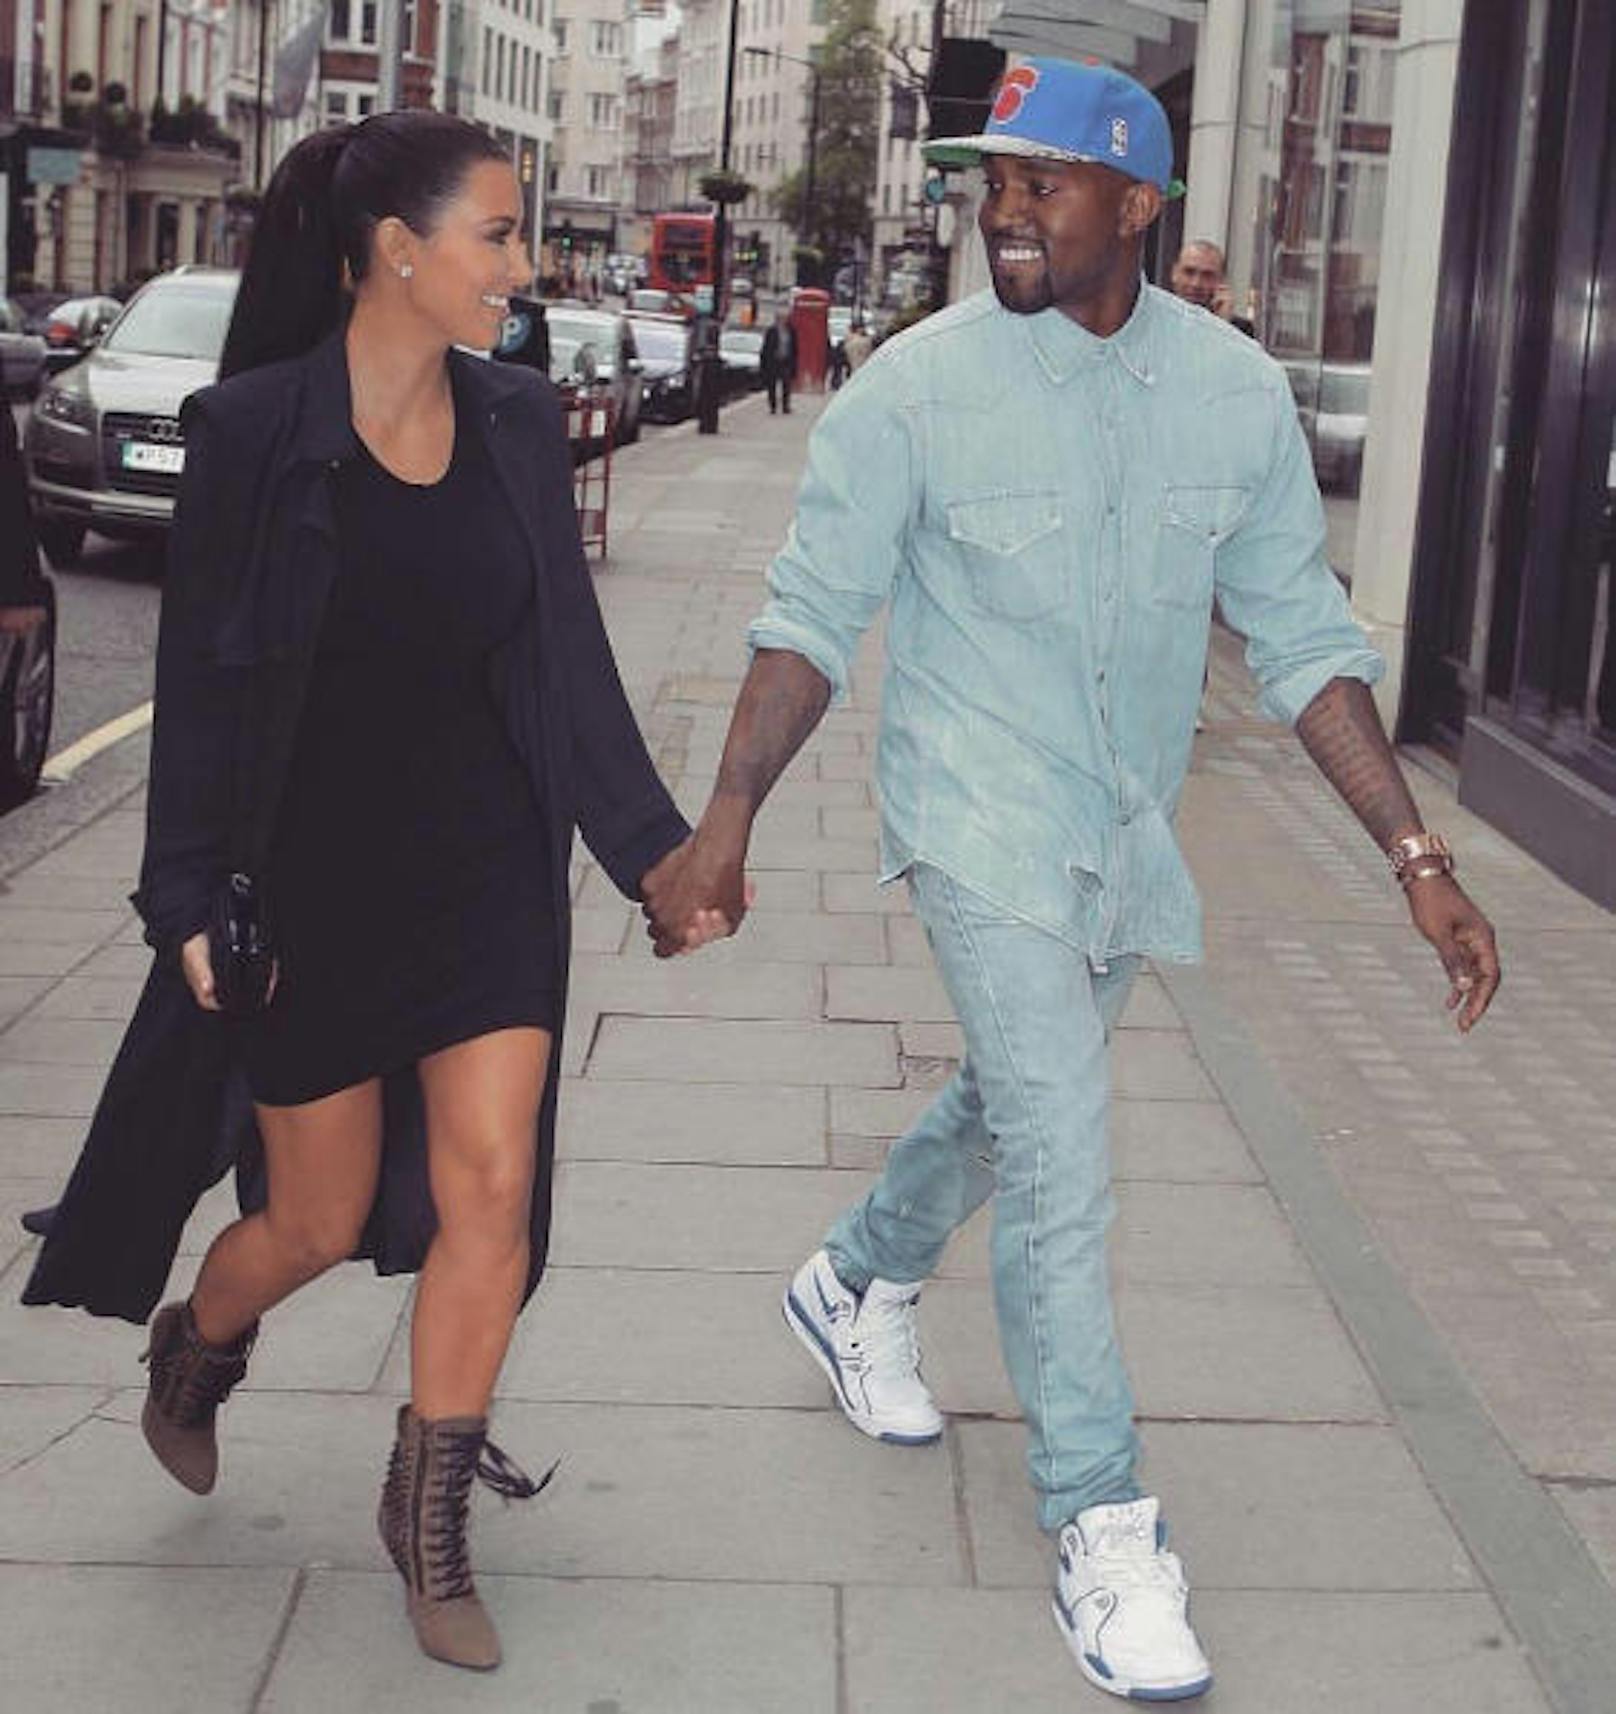 09.06.2017: Am 8. Juni feierte Rapper Kanye West seinen 40. Geburtstag. Ehefrau Kim Kardashian gratulierte ihrem Schatz mit diesem Schnappschuss auf Instagram: "Happy Birthday Babe, ich liebe dich so sehr."